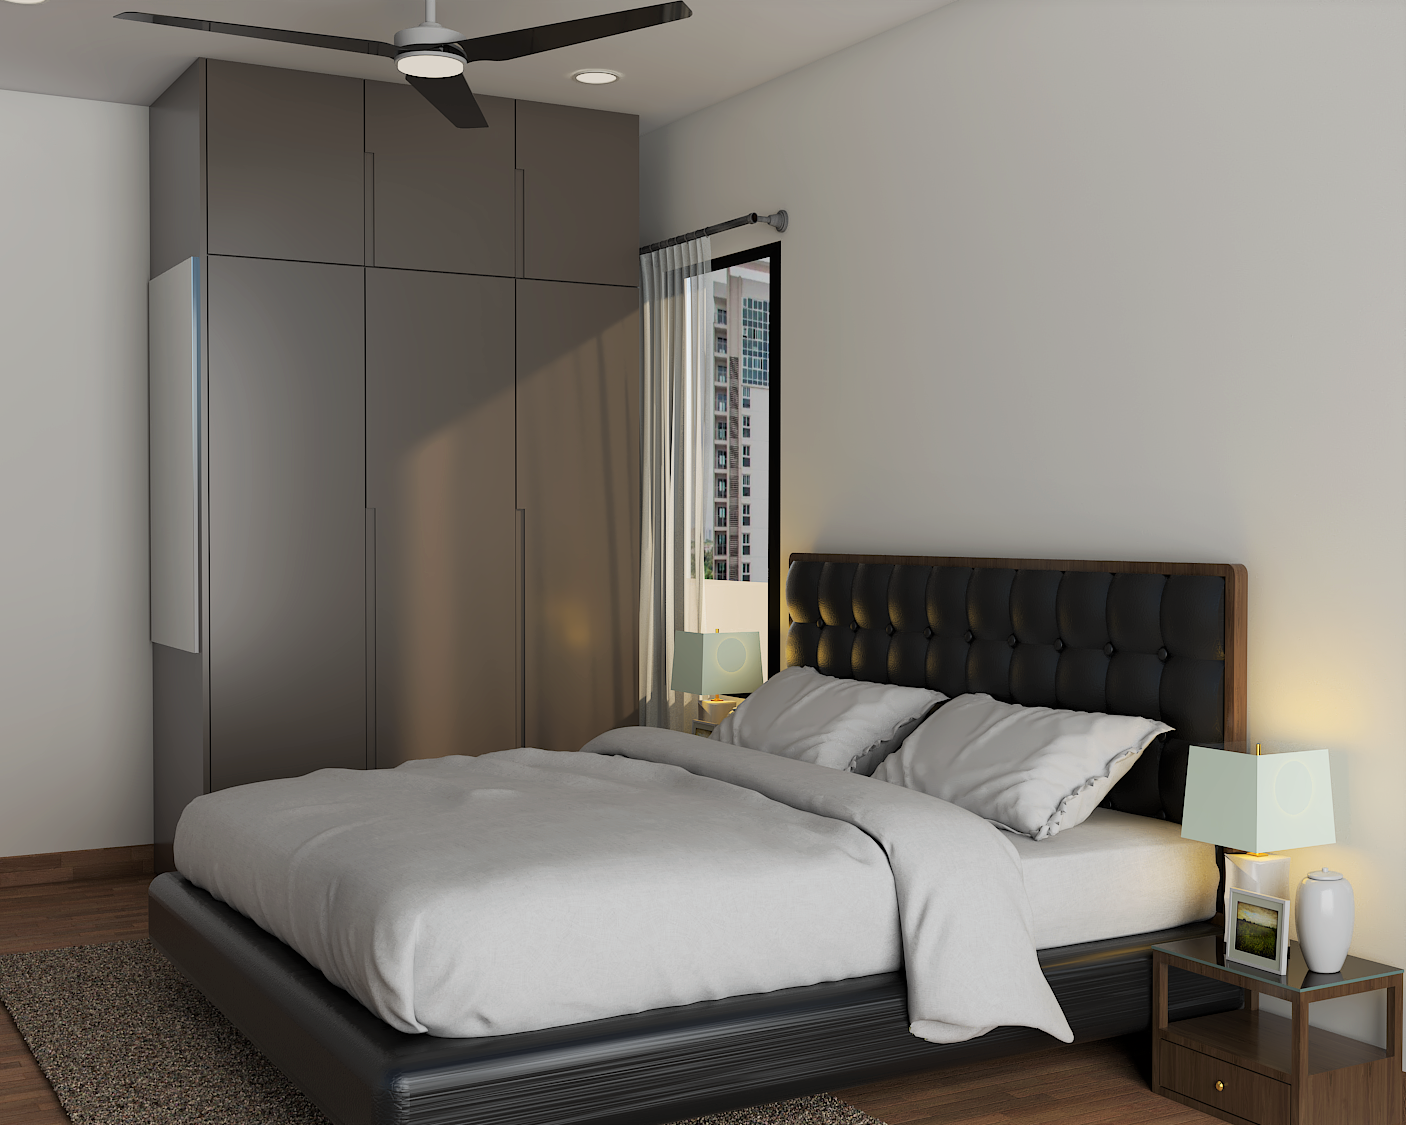 Compact Master Bedroom Interior Design with Grey Wardrobe